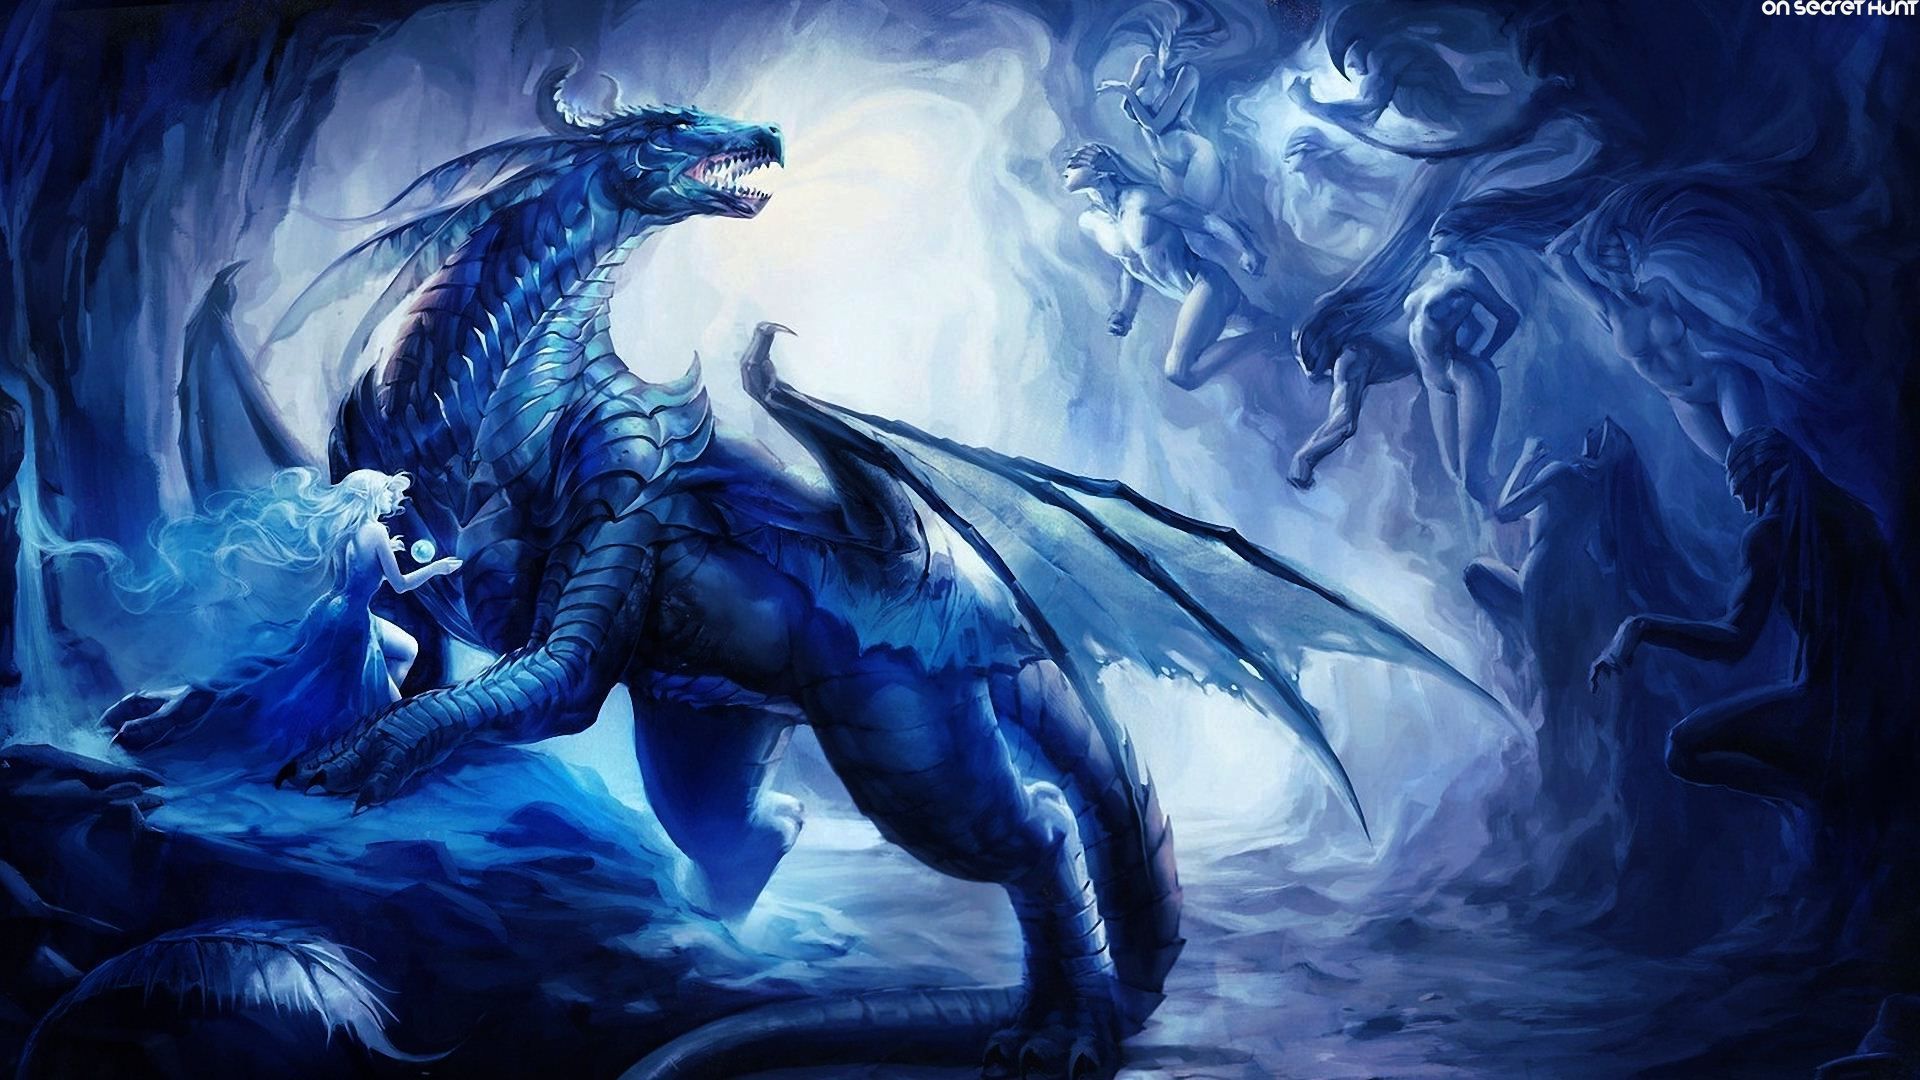 Rồng xanh (Azure Dragon): Những chú rồng xanh mang trong mình sức mạnh và tinh thần trân quý của đất trời. Với màu xanh trong trẻo, chúng dường như đang bay lượn trên bầu trời xanh thẳm. Hãy để mình mê mẩn trước vẻ đẹp tuyệt vời của những chú rồng xanh qua bộ sưu tập hình ảnh chất lượng cao này. 